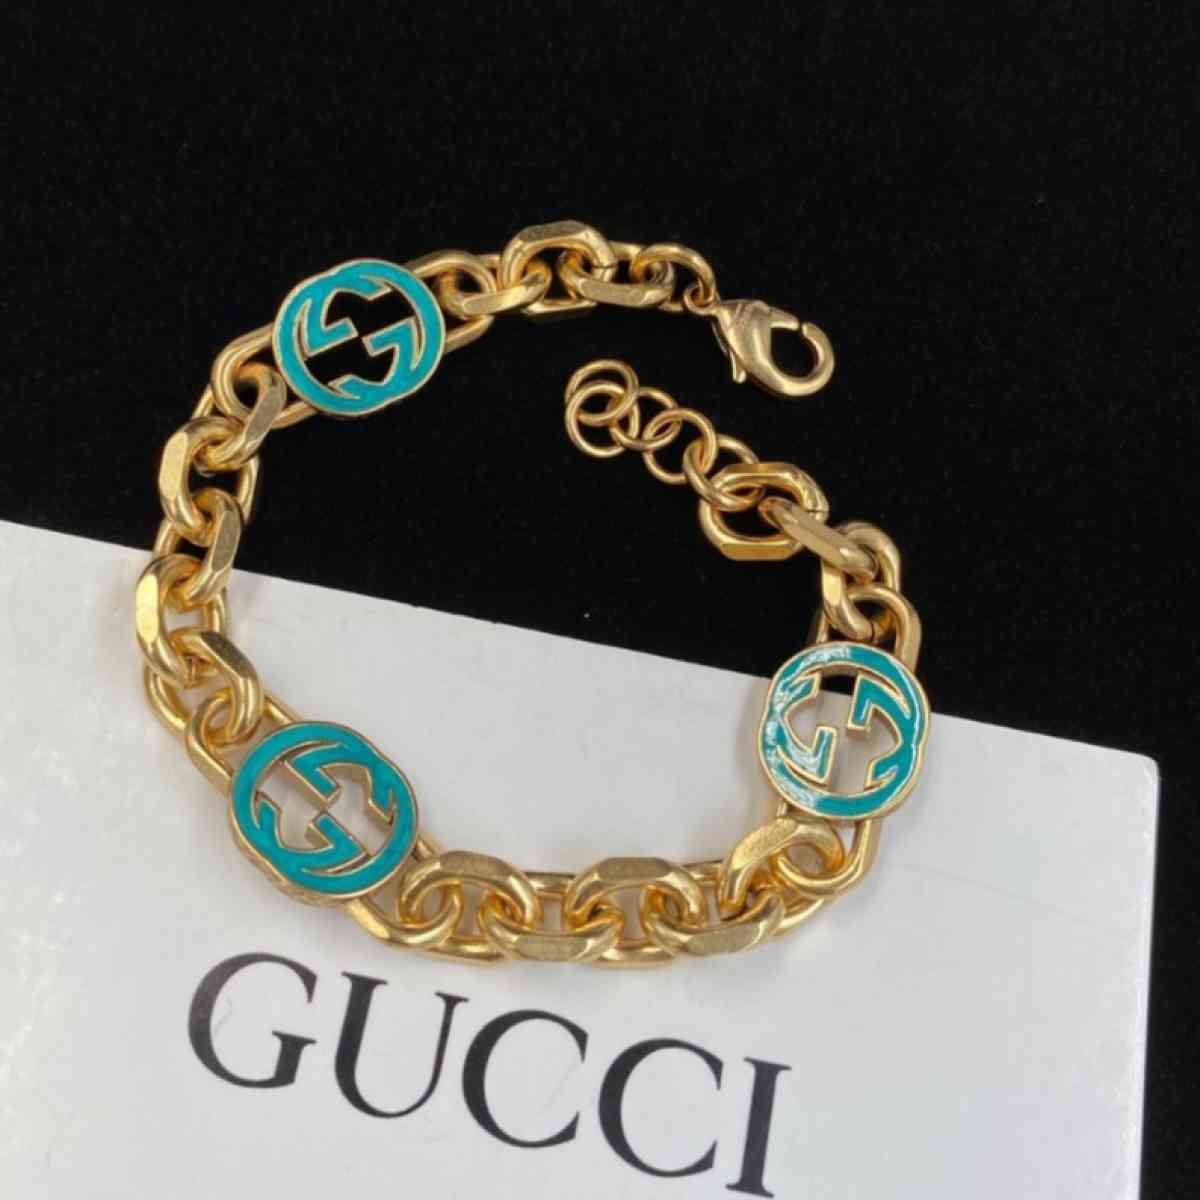 Gucci accessories